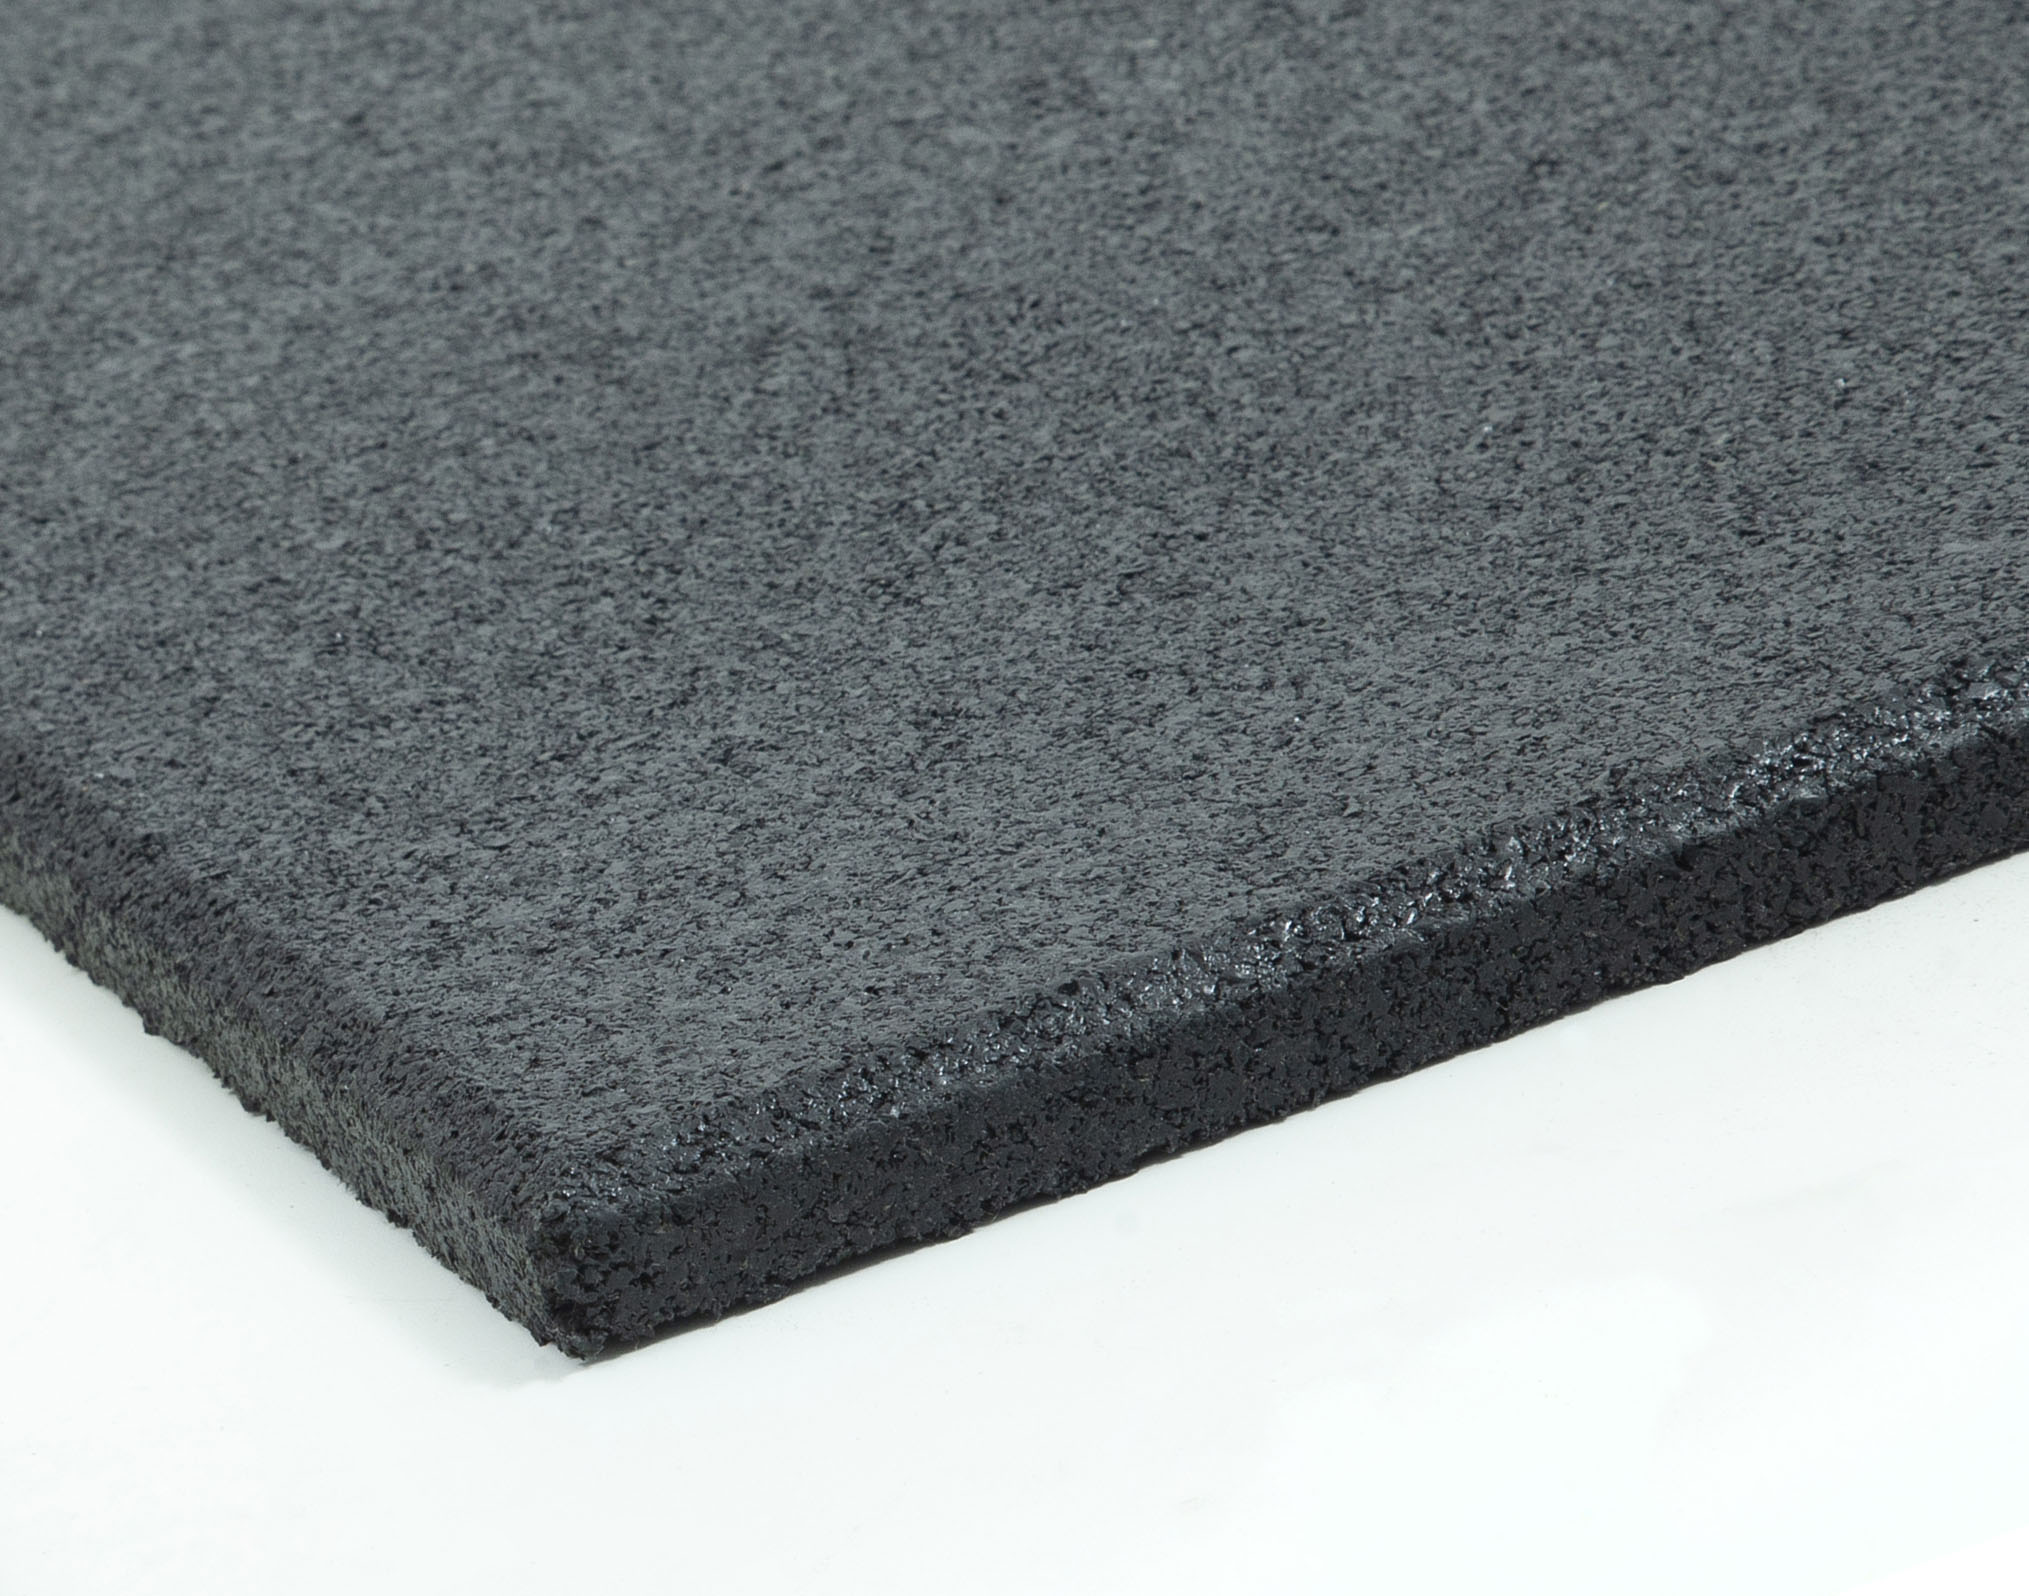 Λαστιχένιο Πάτωμα BEFIT ZERO Πλακάκι 100x50cm 15mm Μαύρο